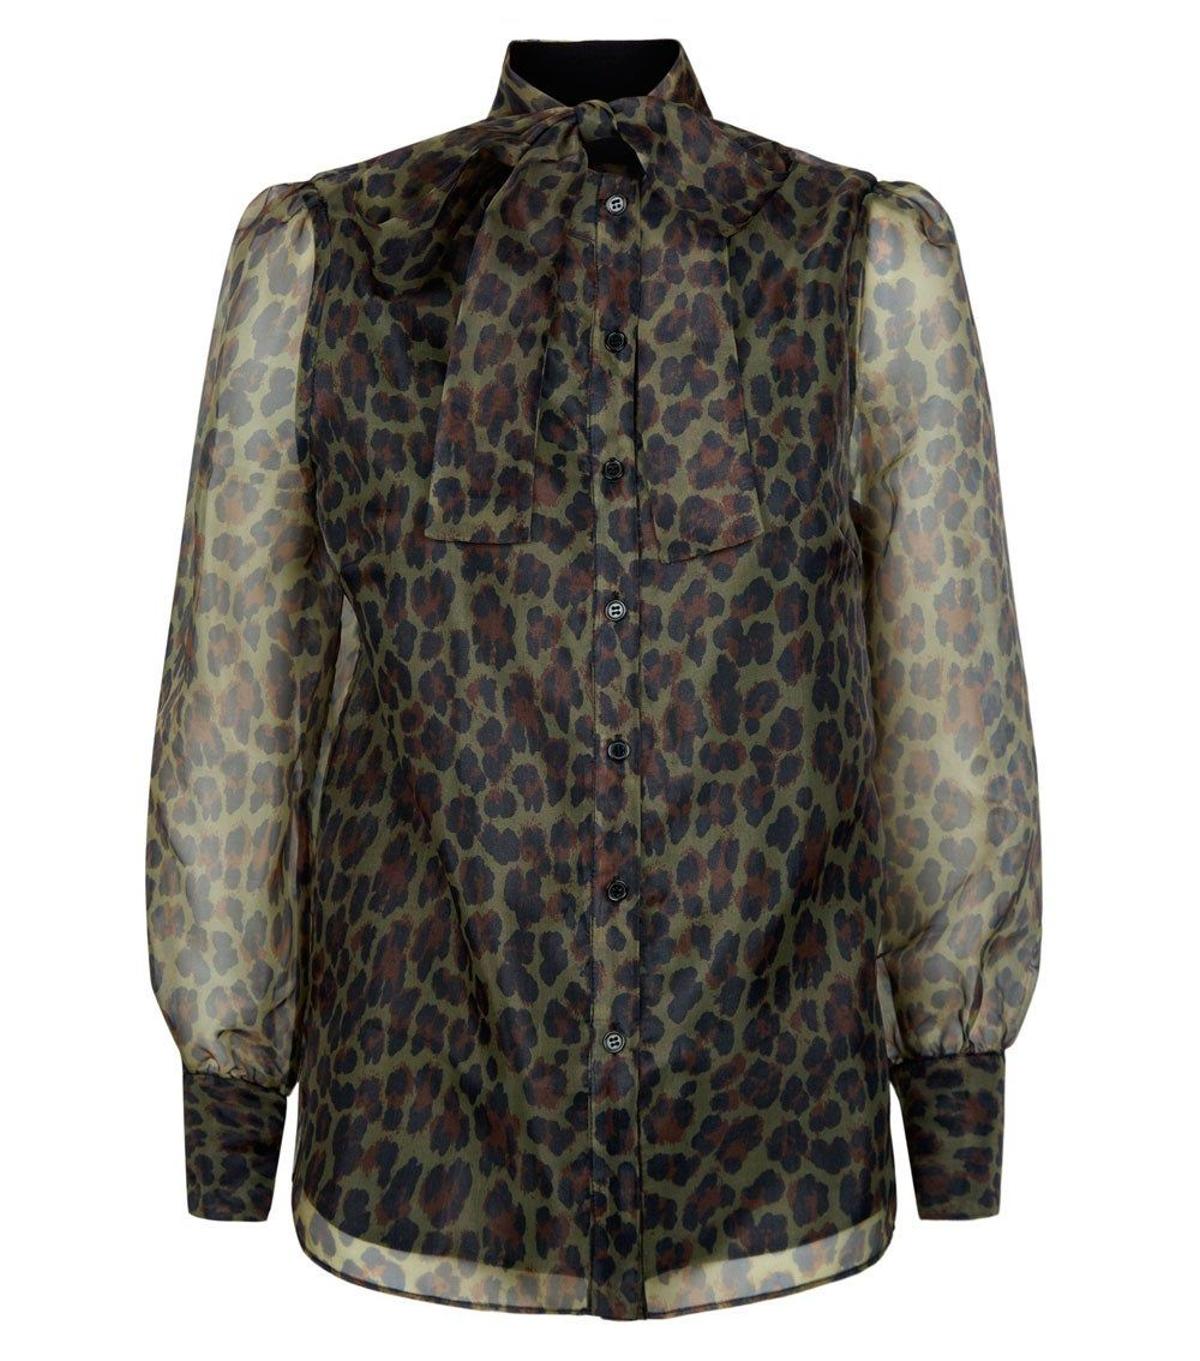 Blusa de organza de estampado de leopardo de New Look. (Precio: 32,99 euros)